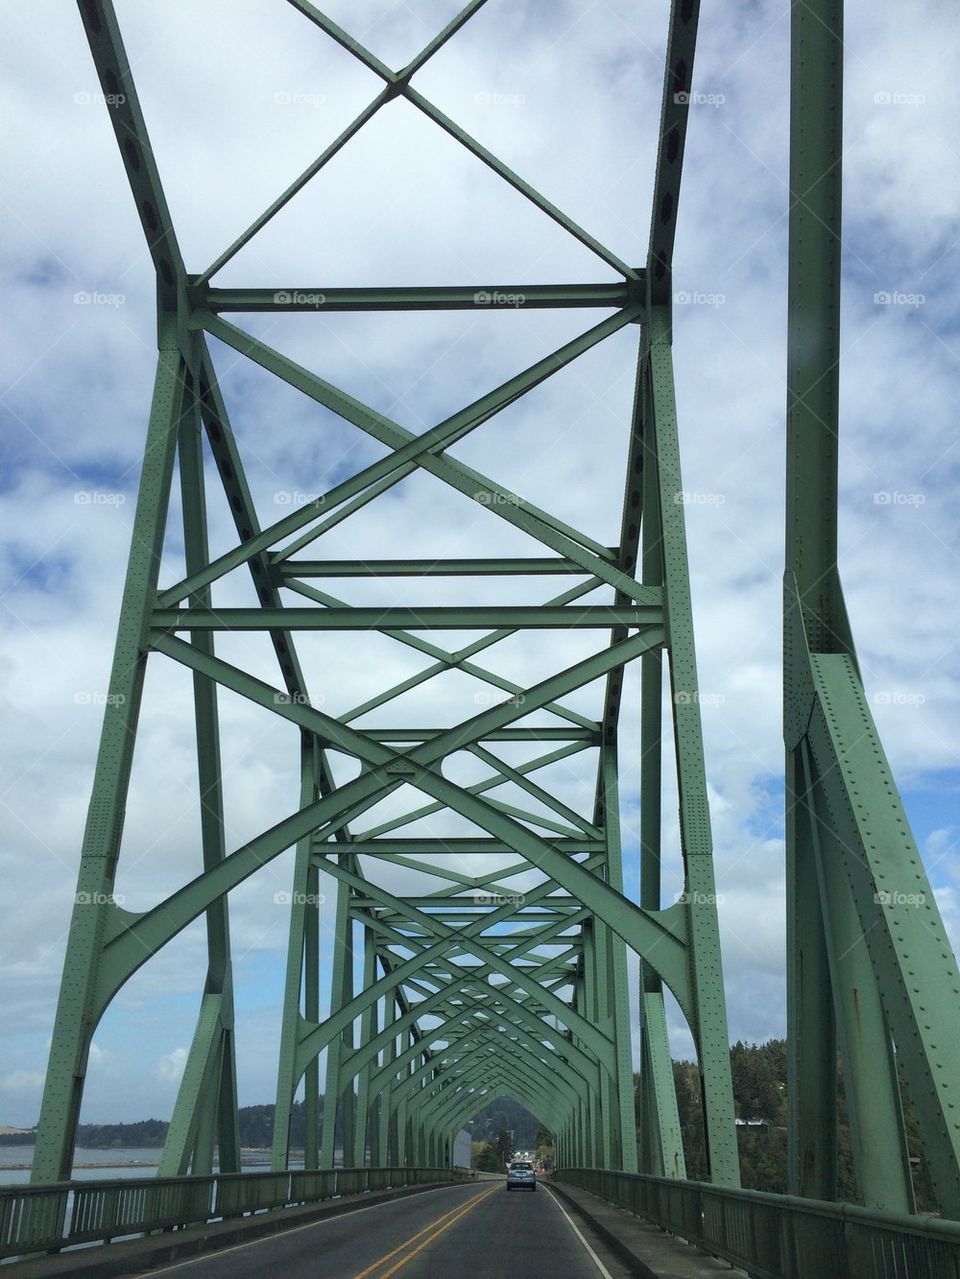 Bridge Perspective 